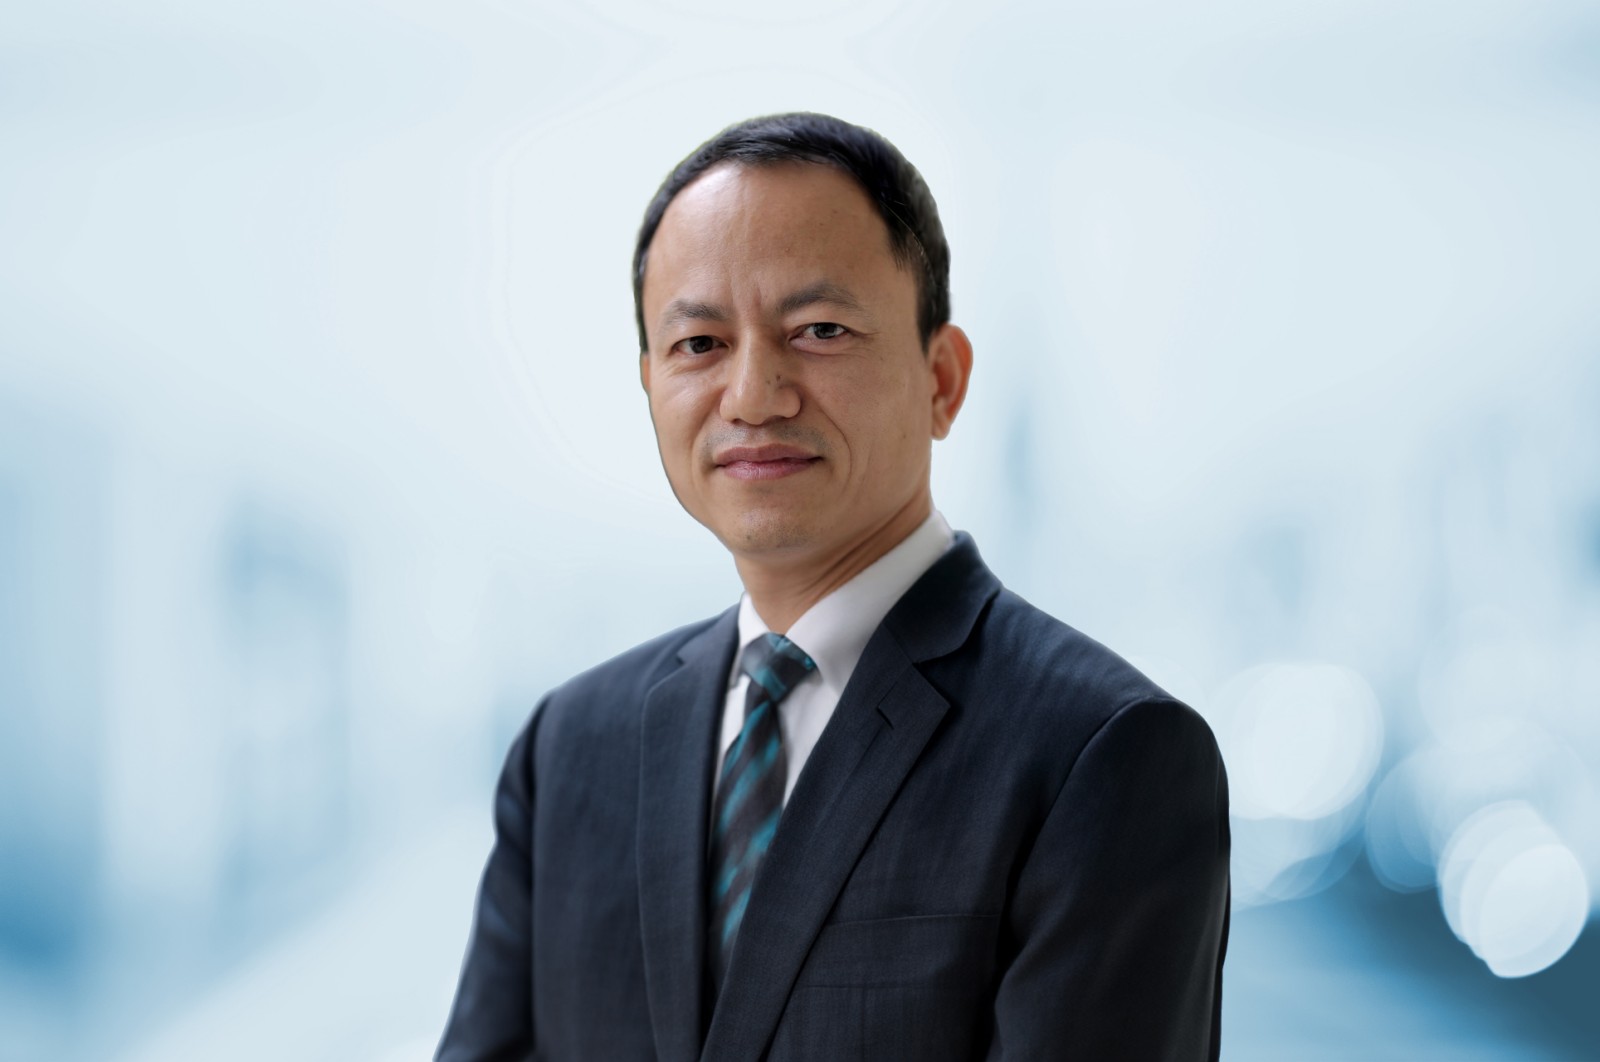 Mr. Tran Xuan Tu